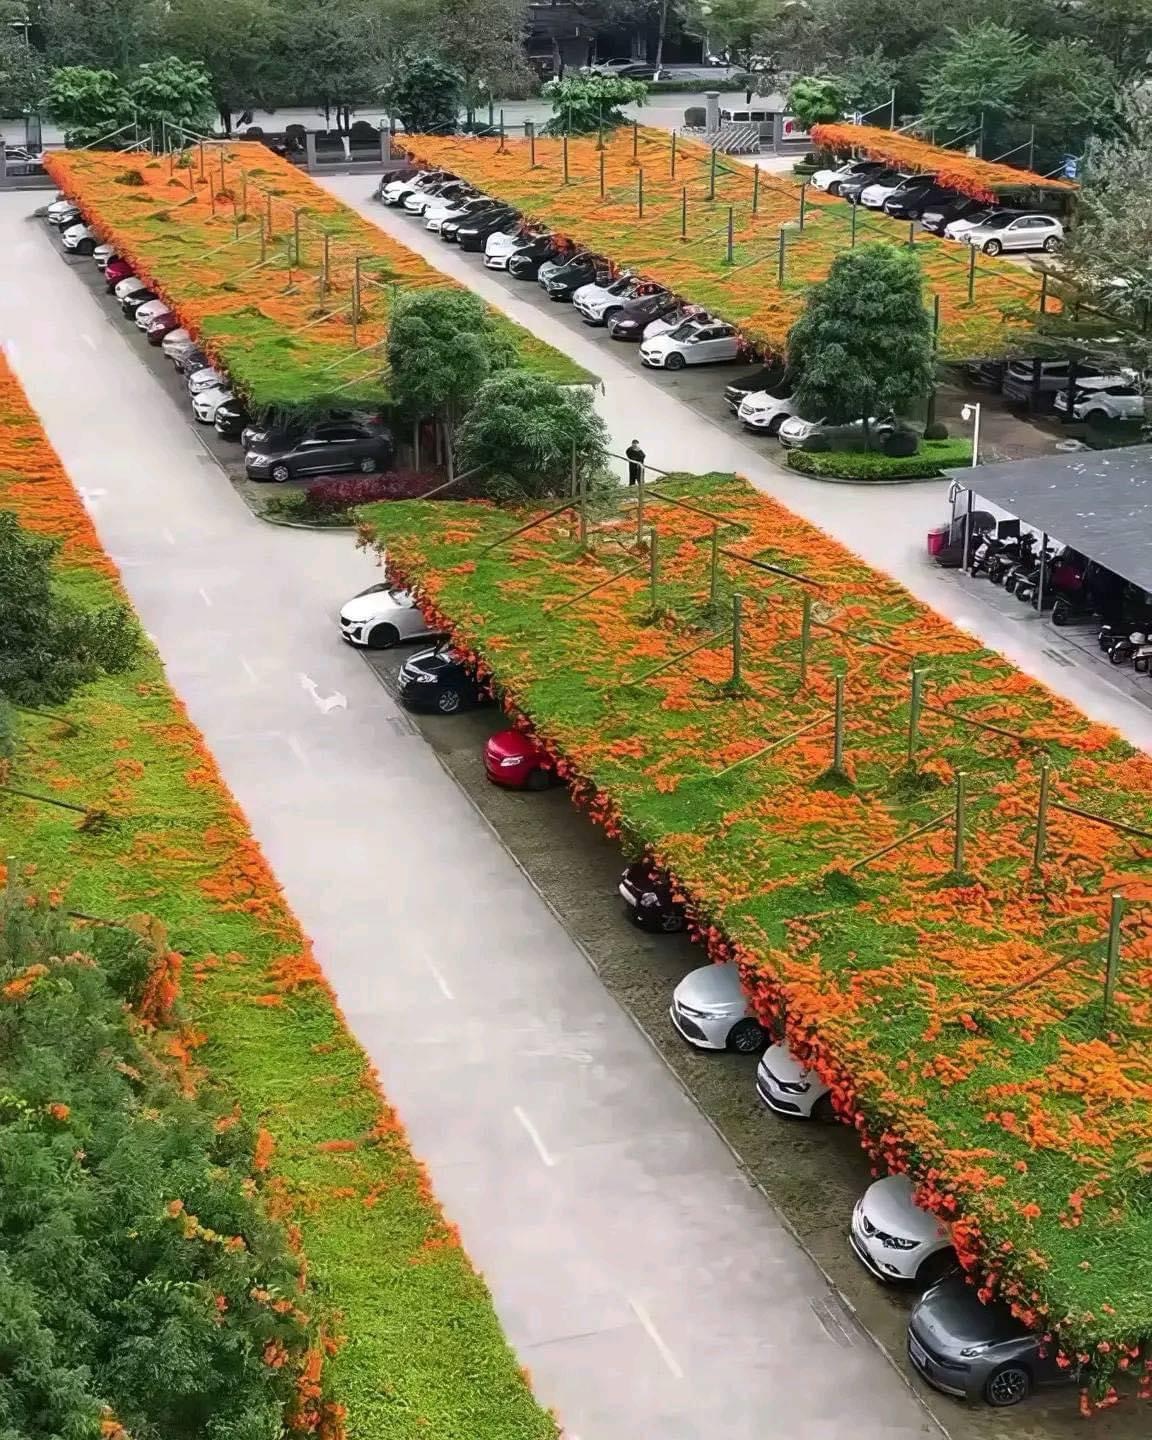 Japón instala jardines flotantes en estacionamientos públicos